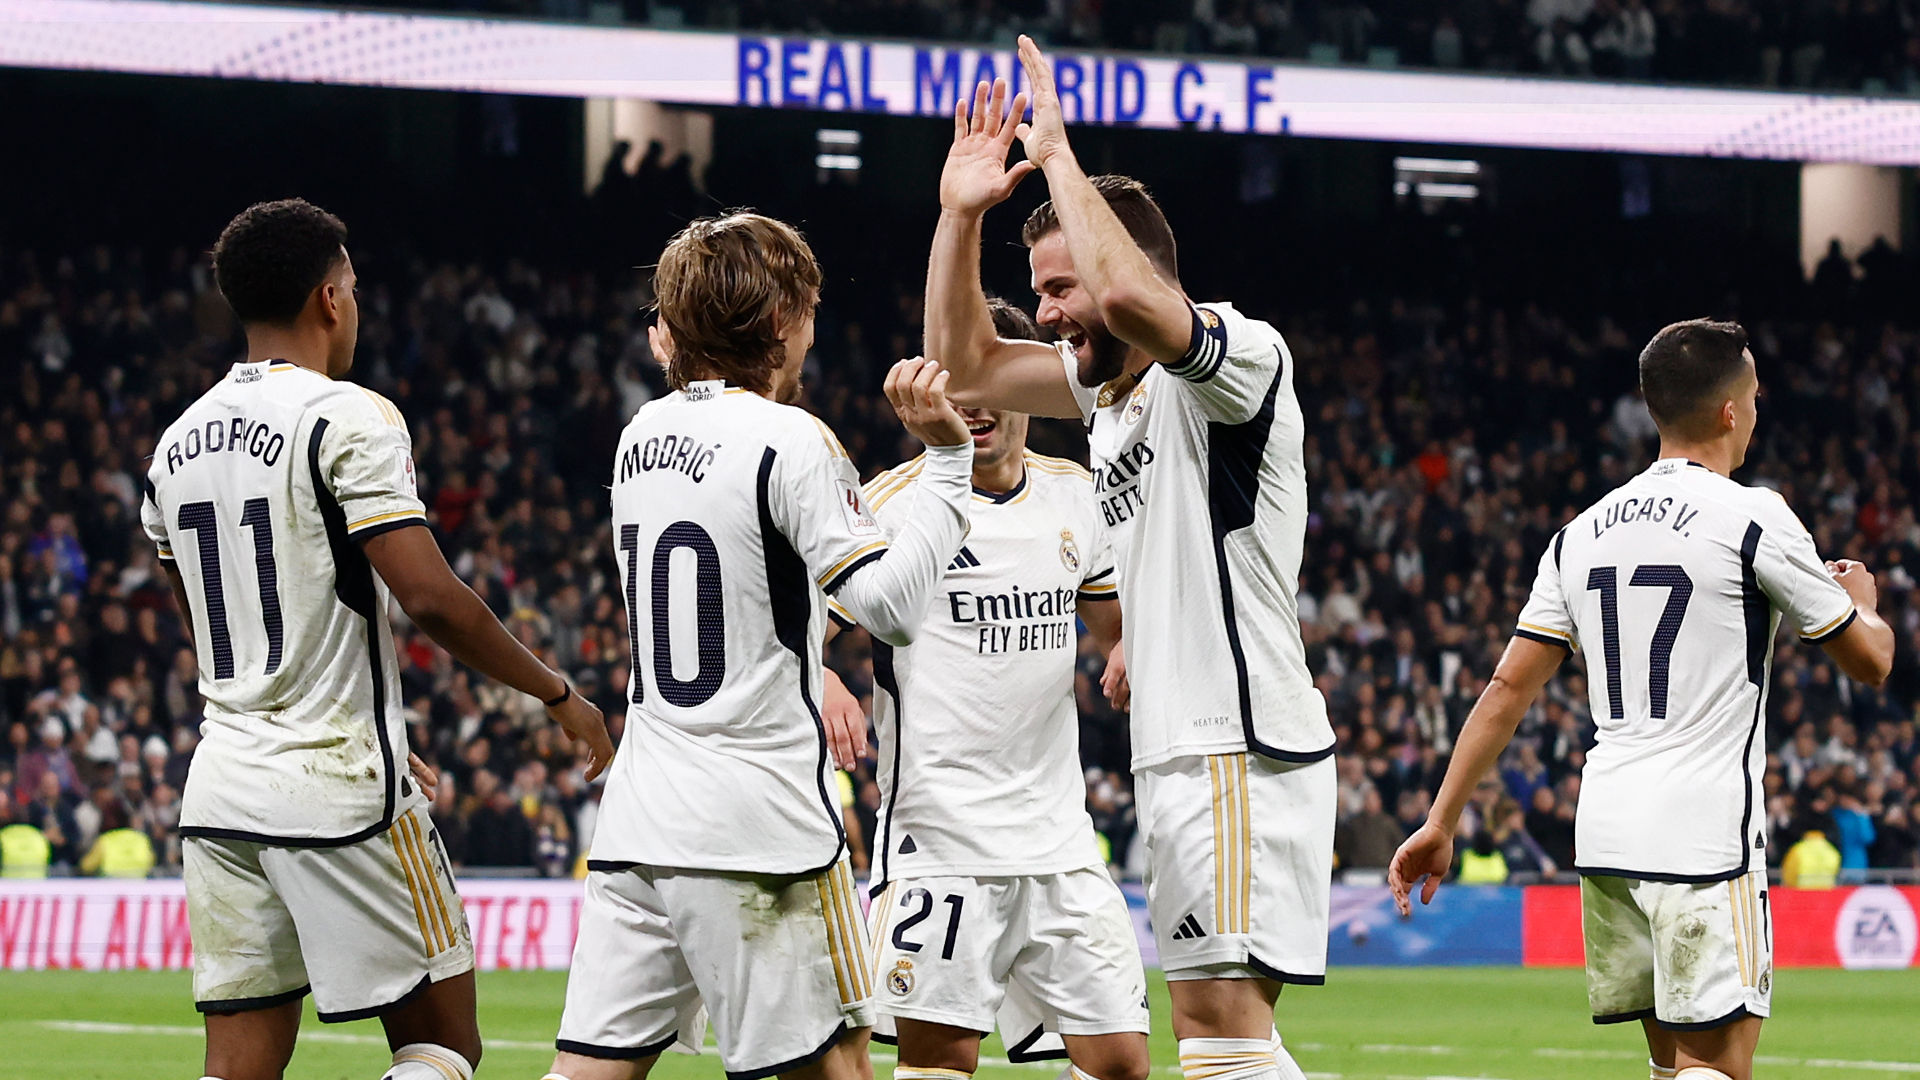 El Villarreal-Real Madrid se jugará el domingo, 19 de mayo, a las 19:00 h